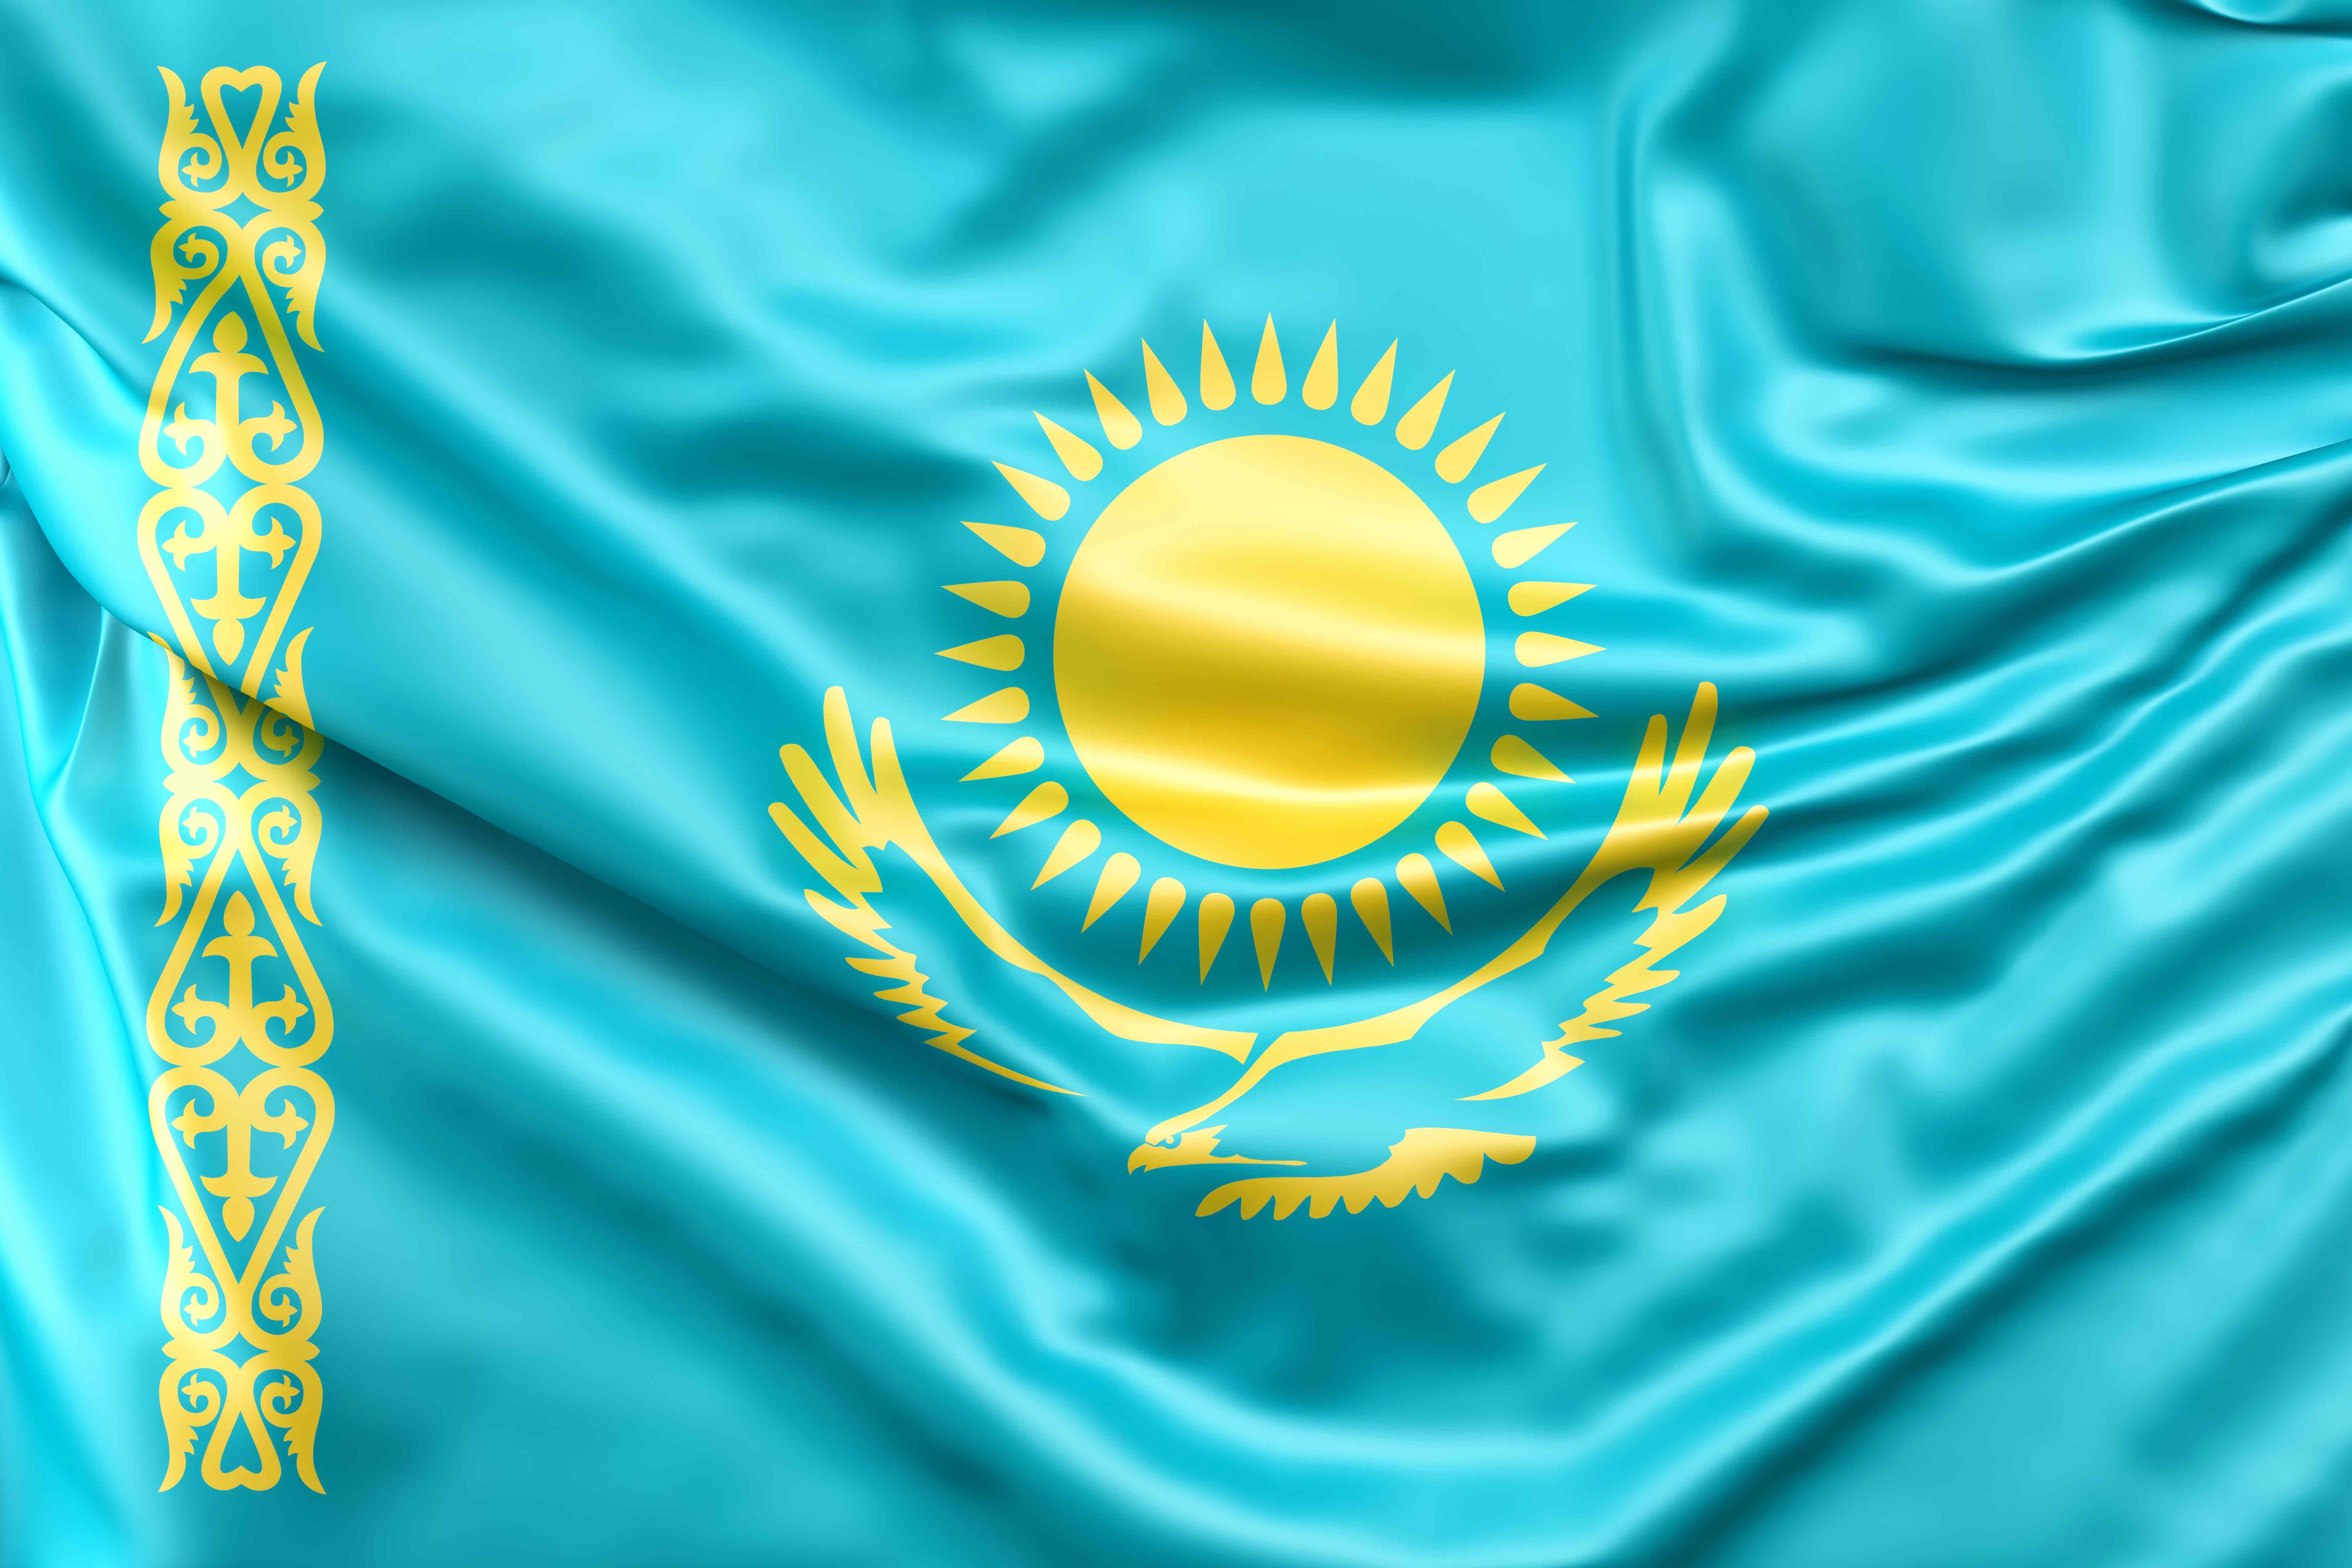 Как изменится размер пенсий в Казахстане в течение 5 лет, начиная с 2023 года